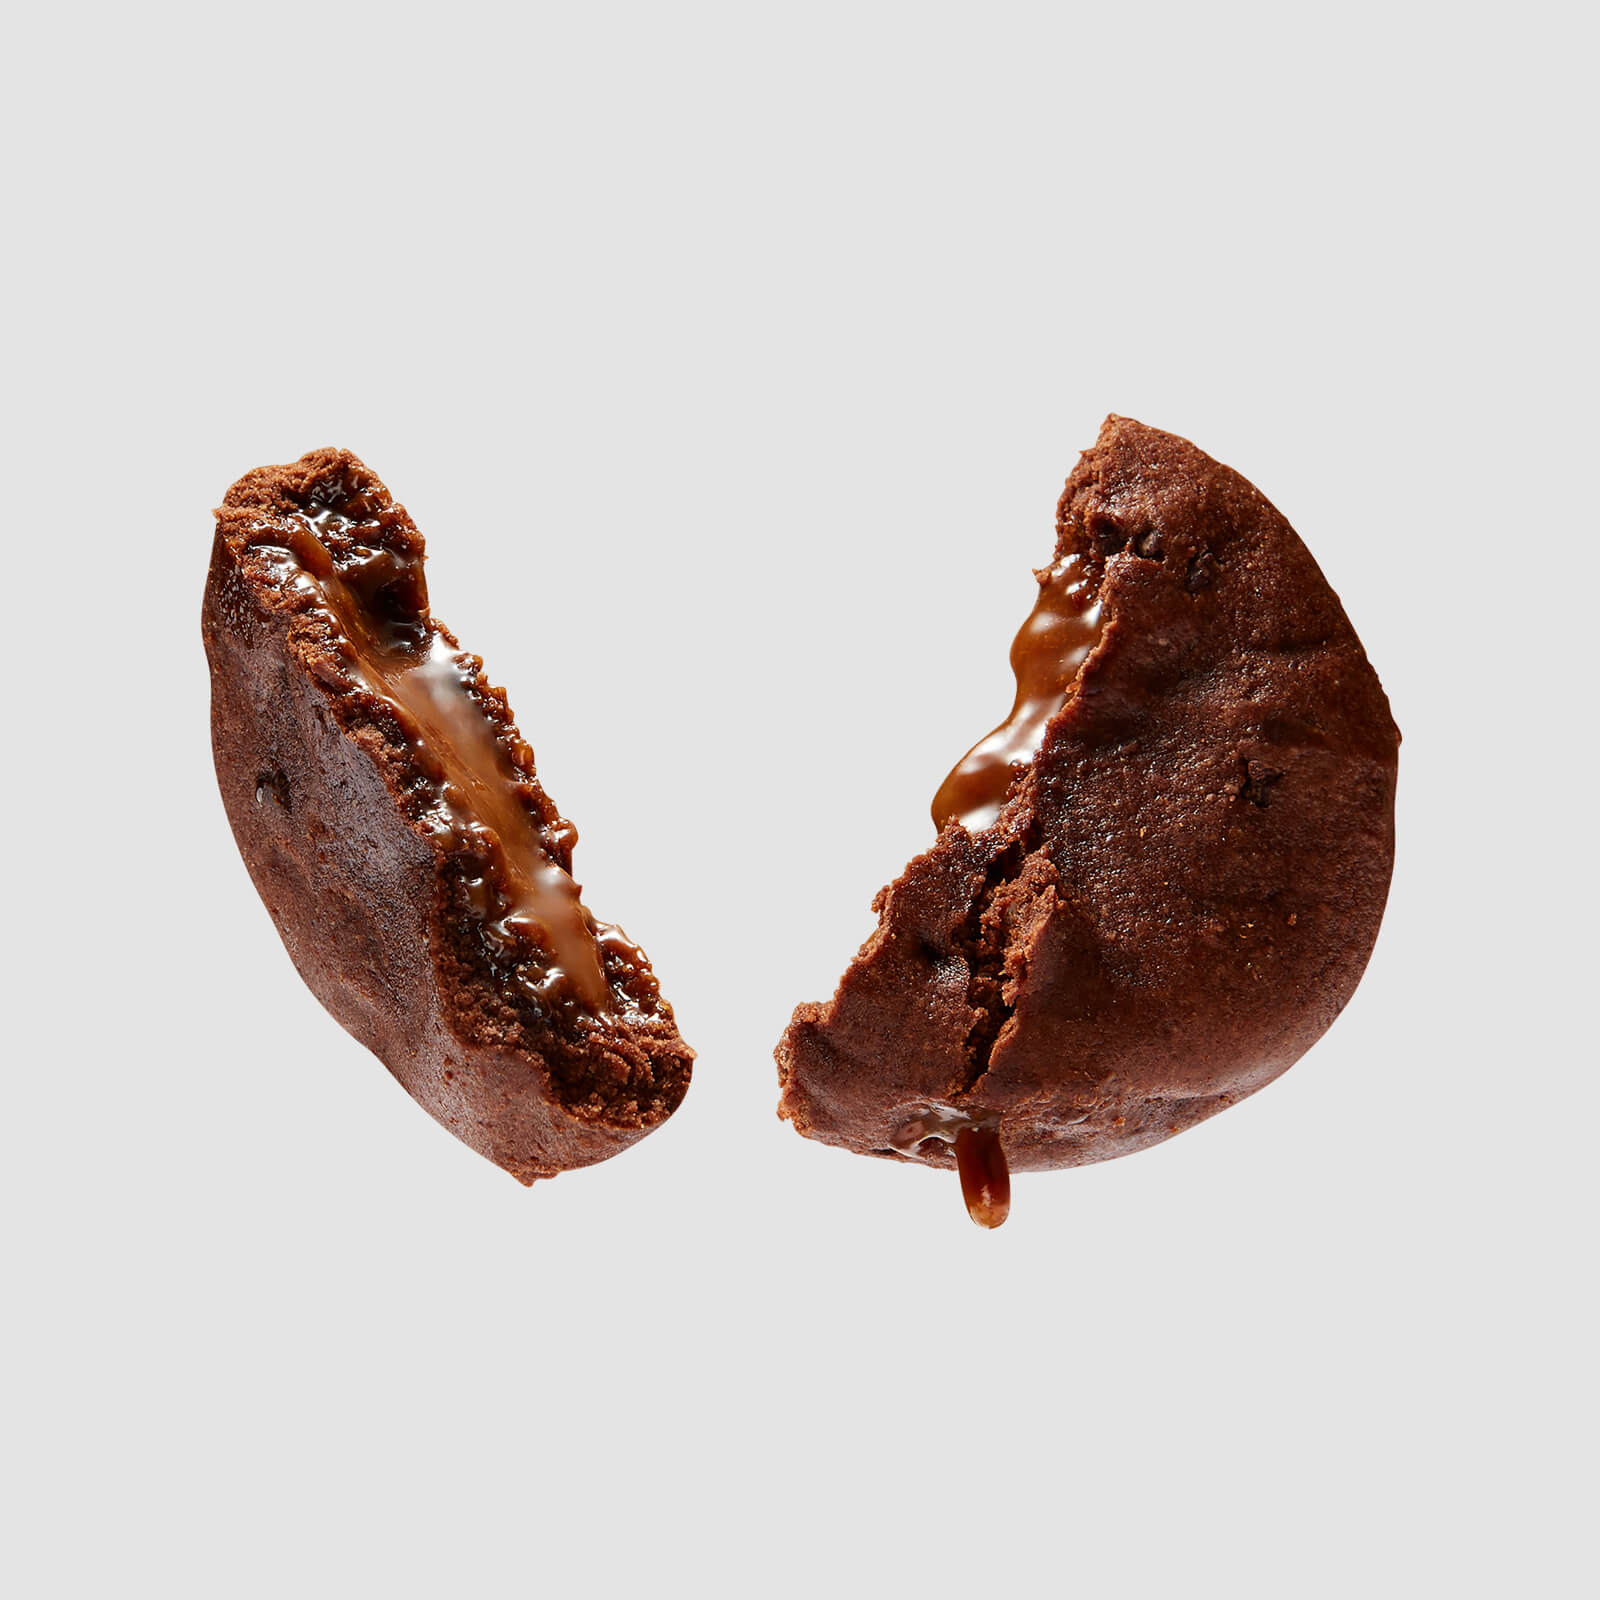 Myprotein Plnená Proteínová Sušienka - Double Chocolate and Caramel